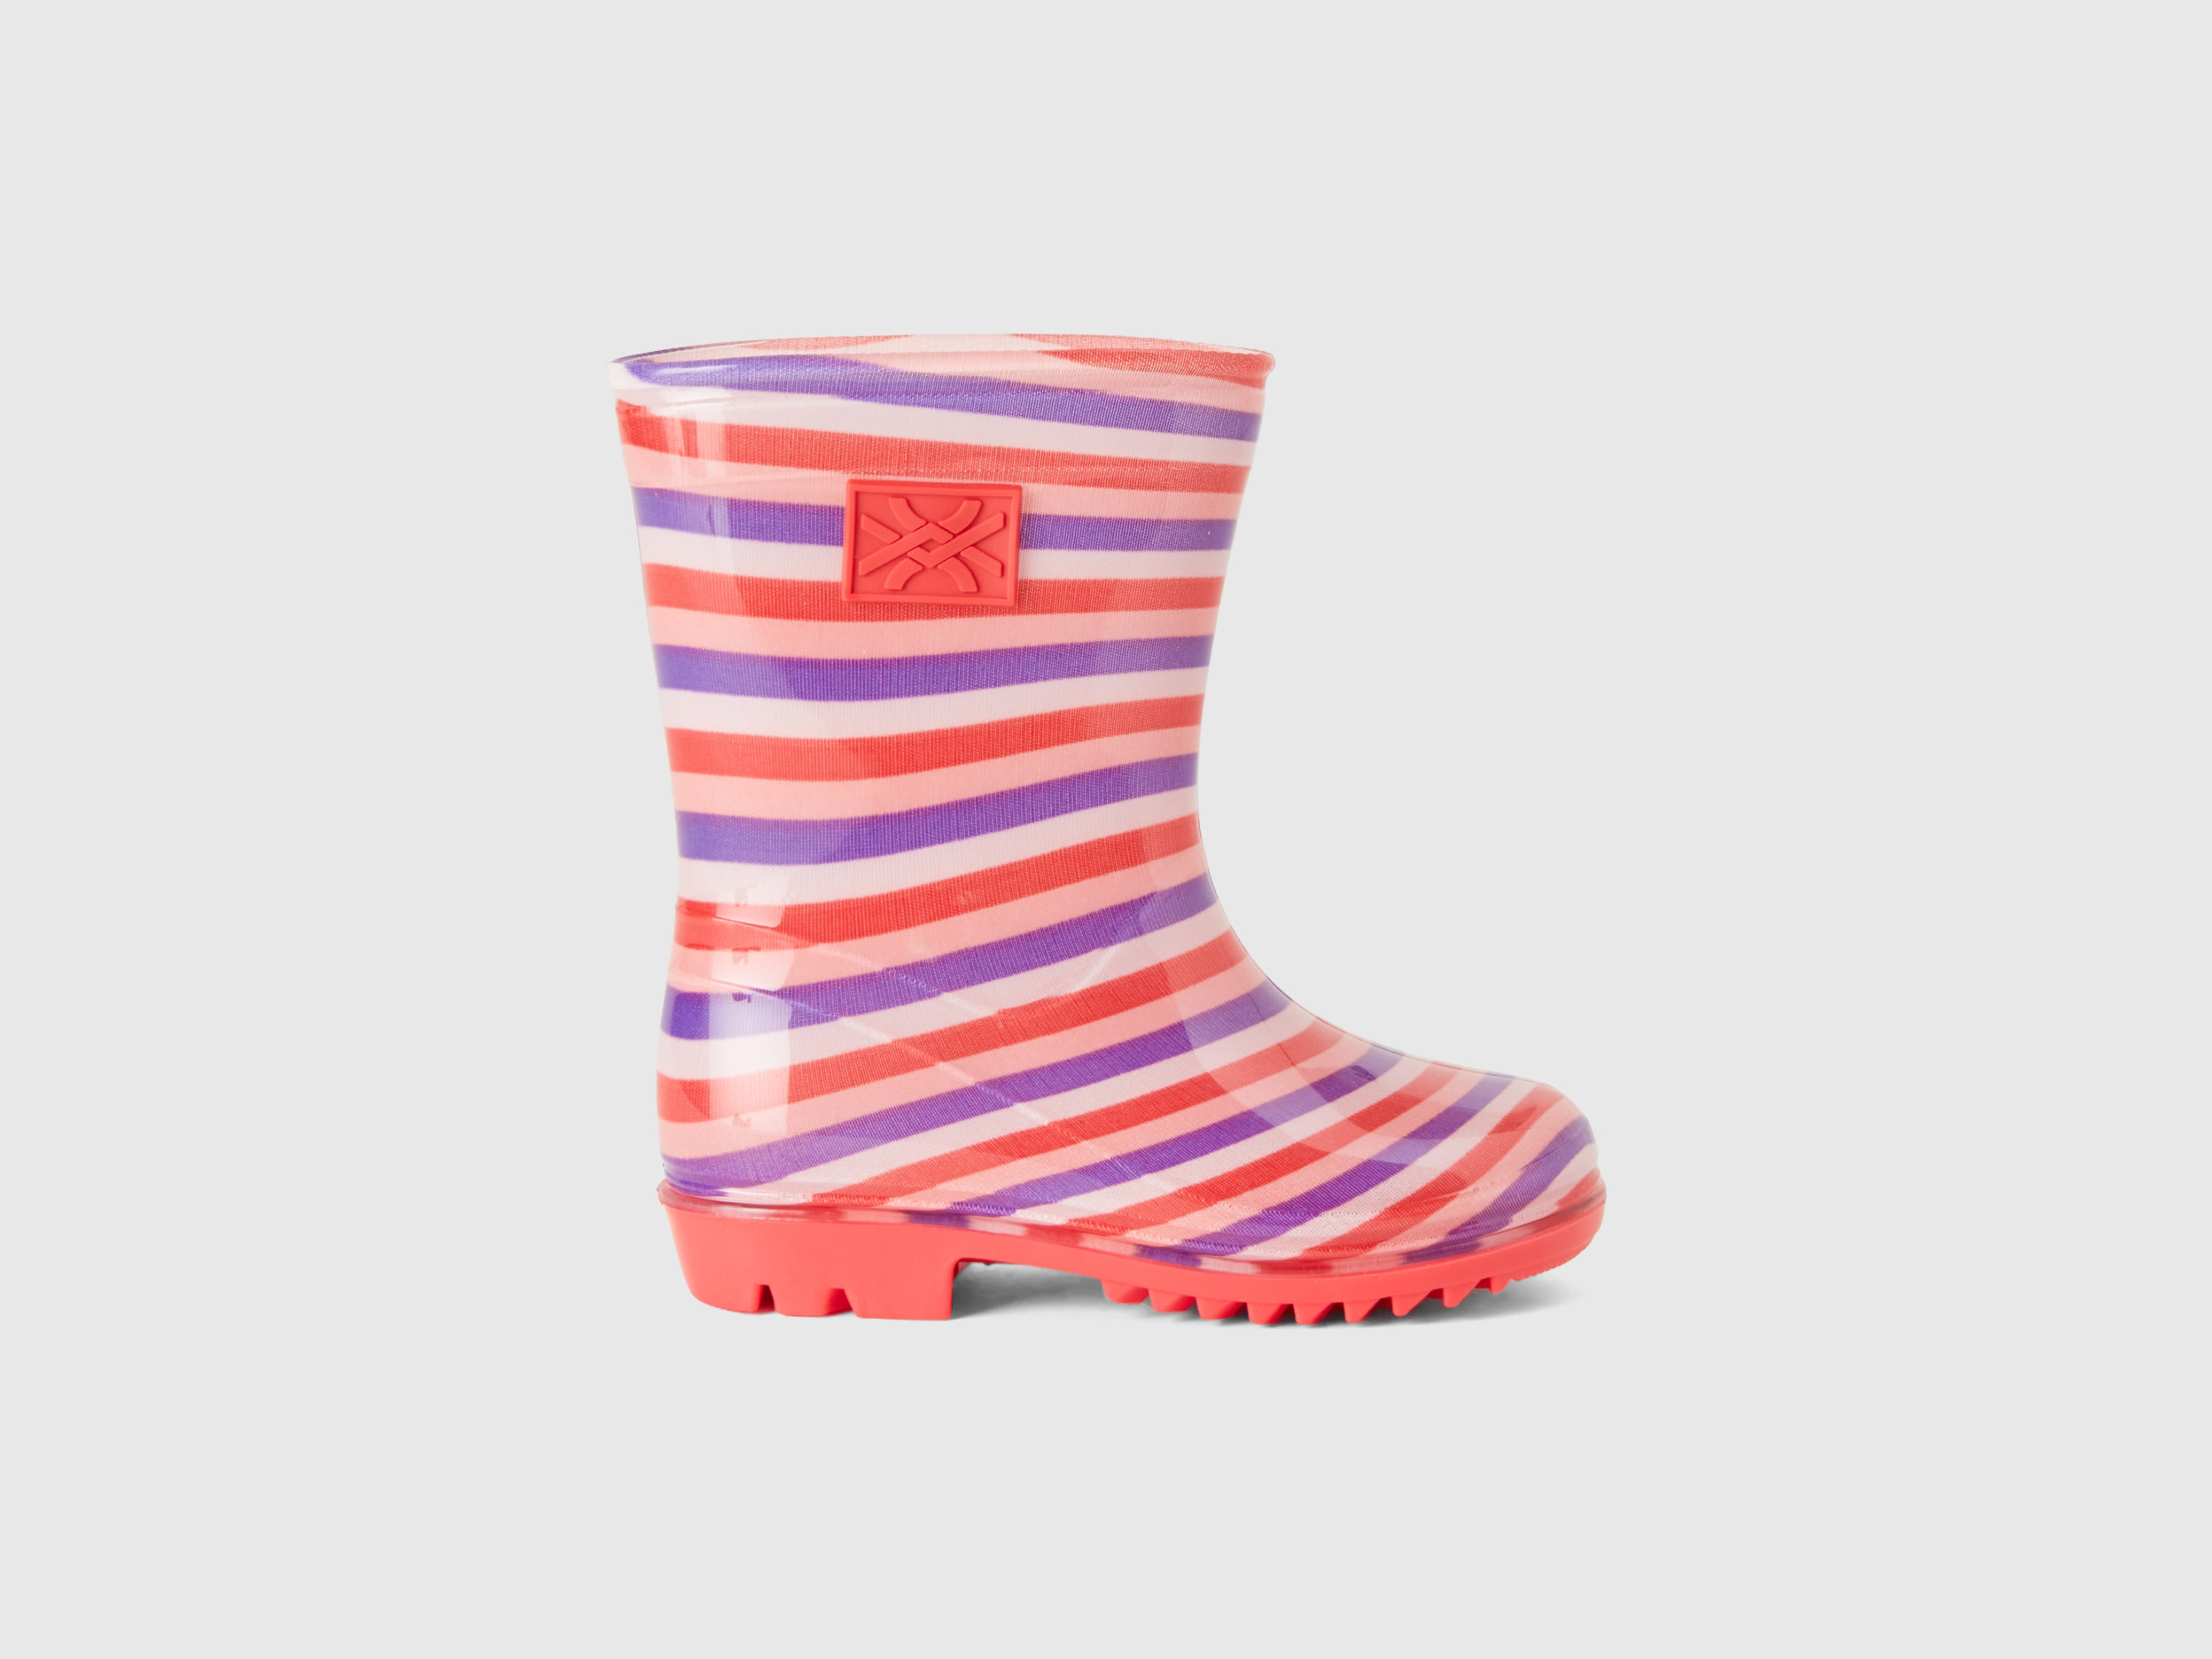 Benetton, Rubber Rain Boots, size 10C, Multi-color, Kids